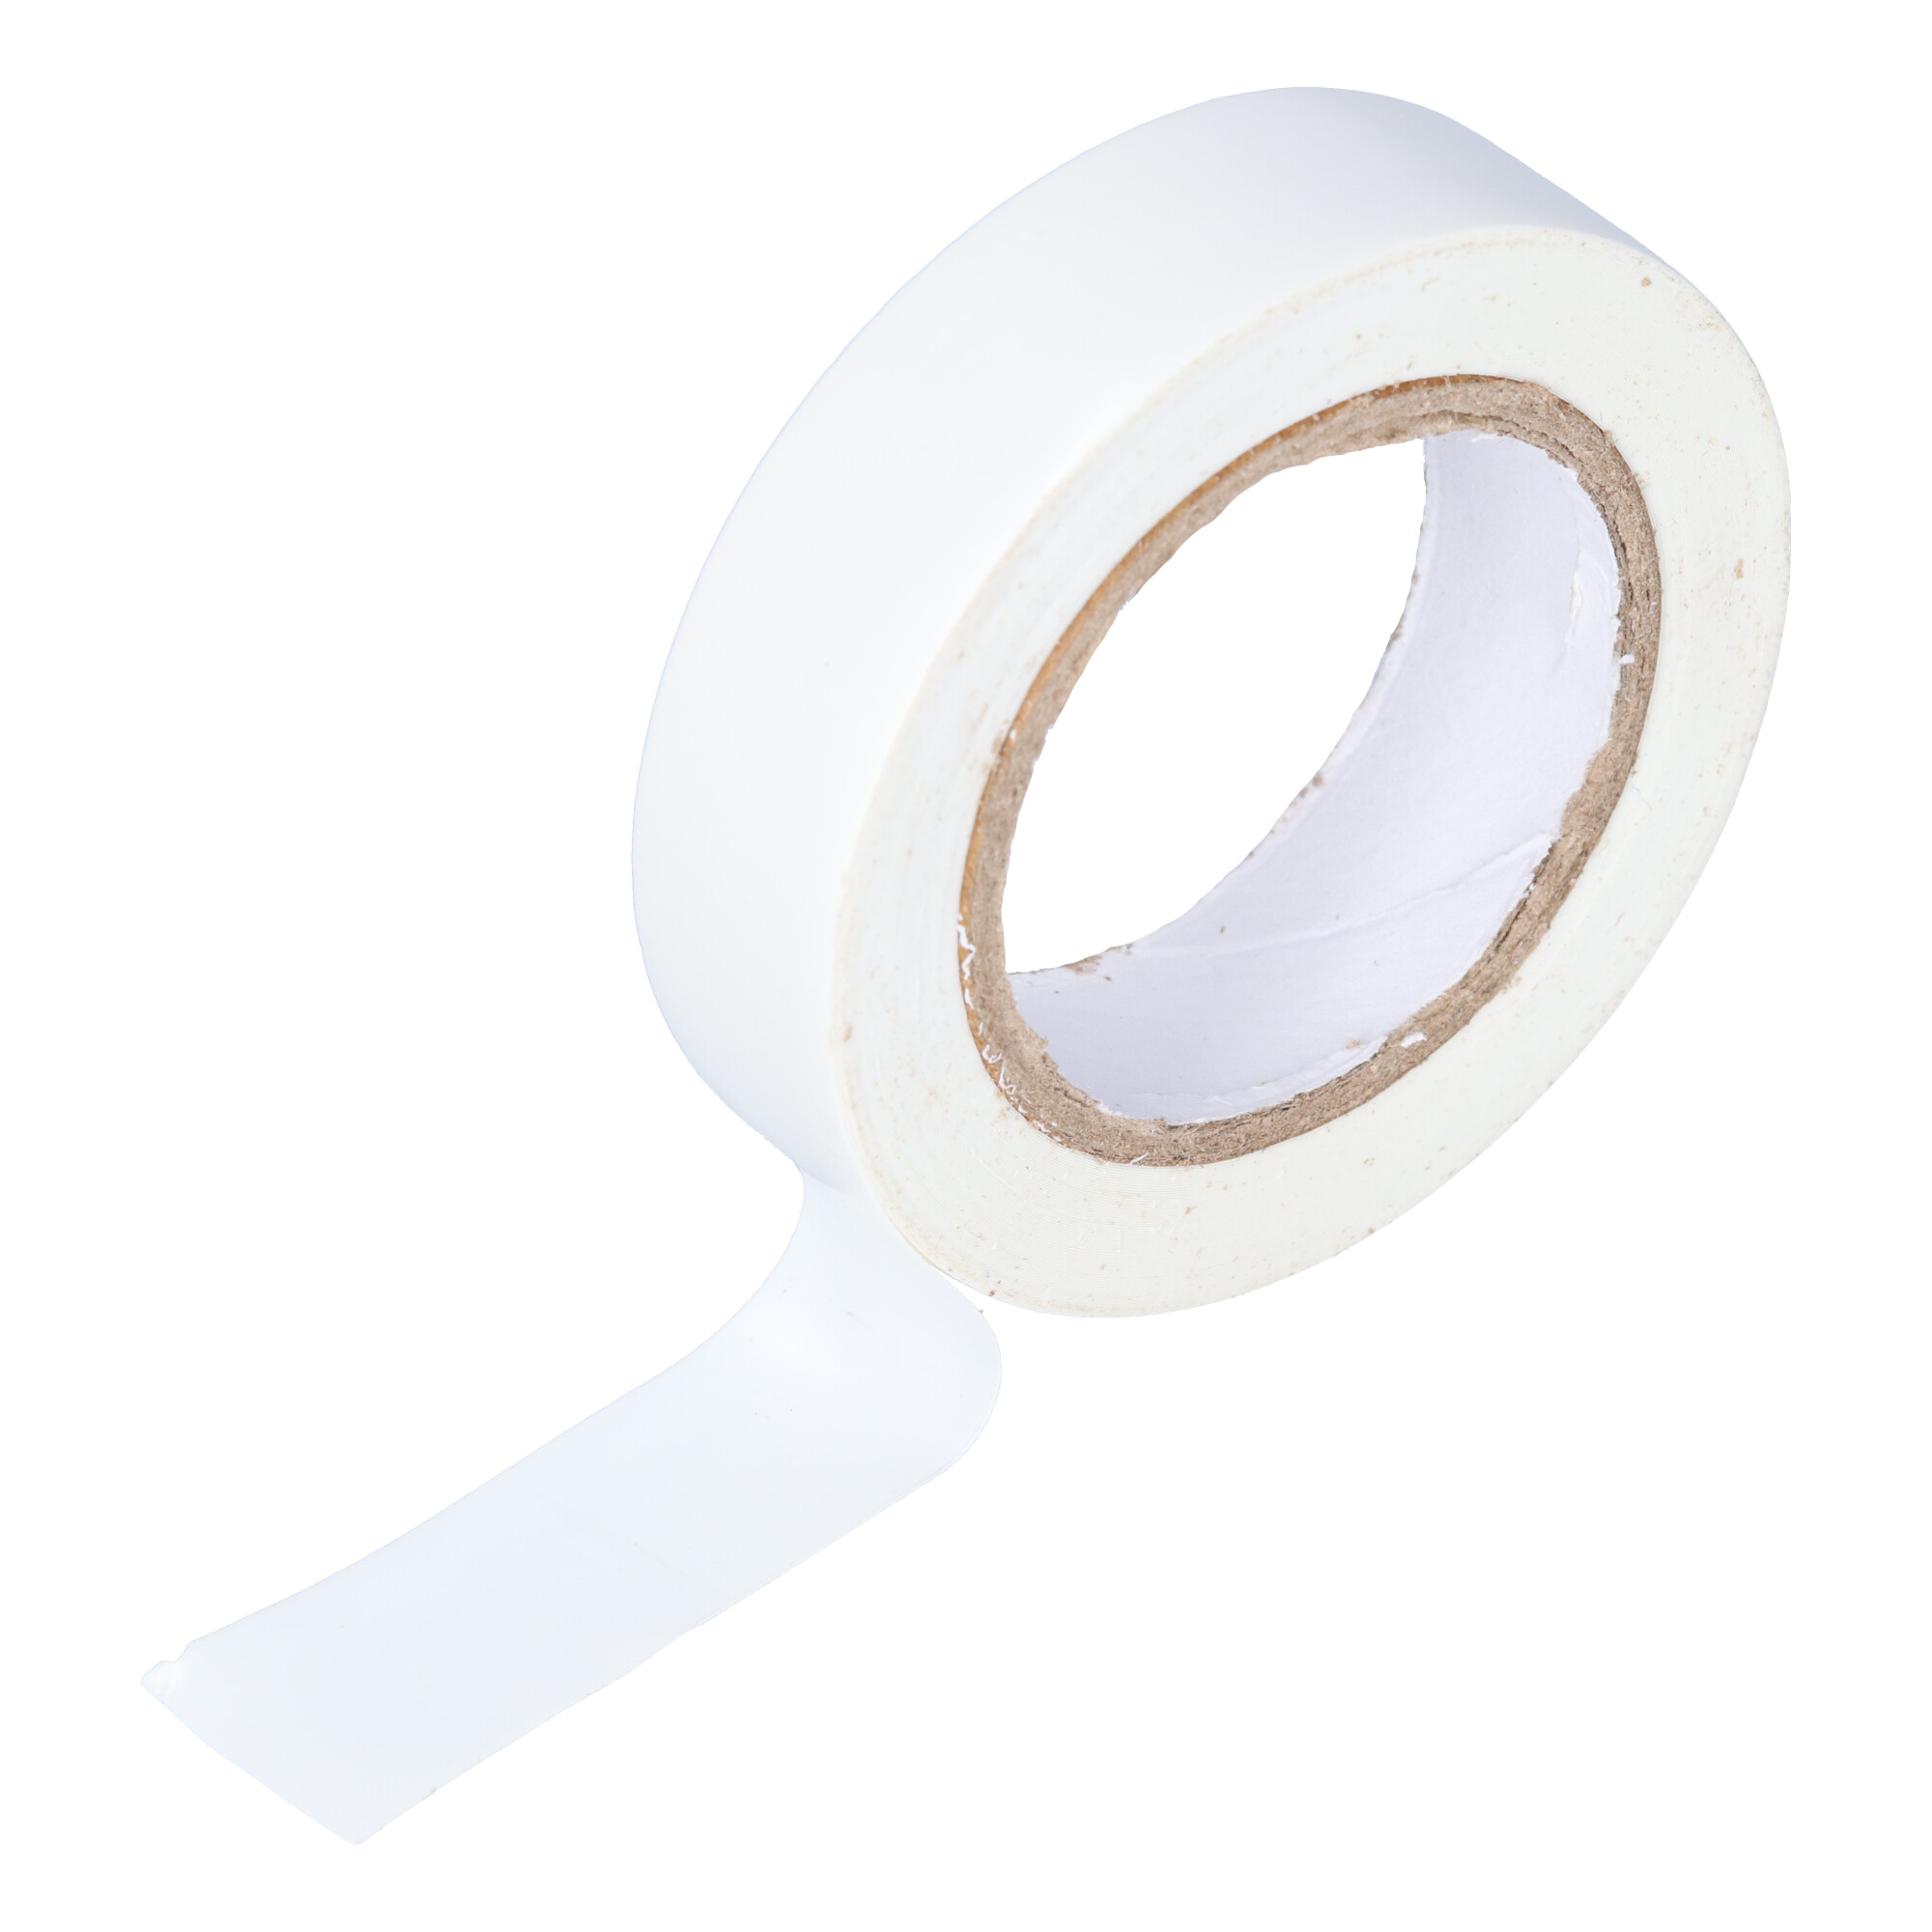 95-NI 14BI PVC adhesive tape